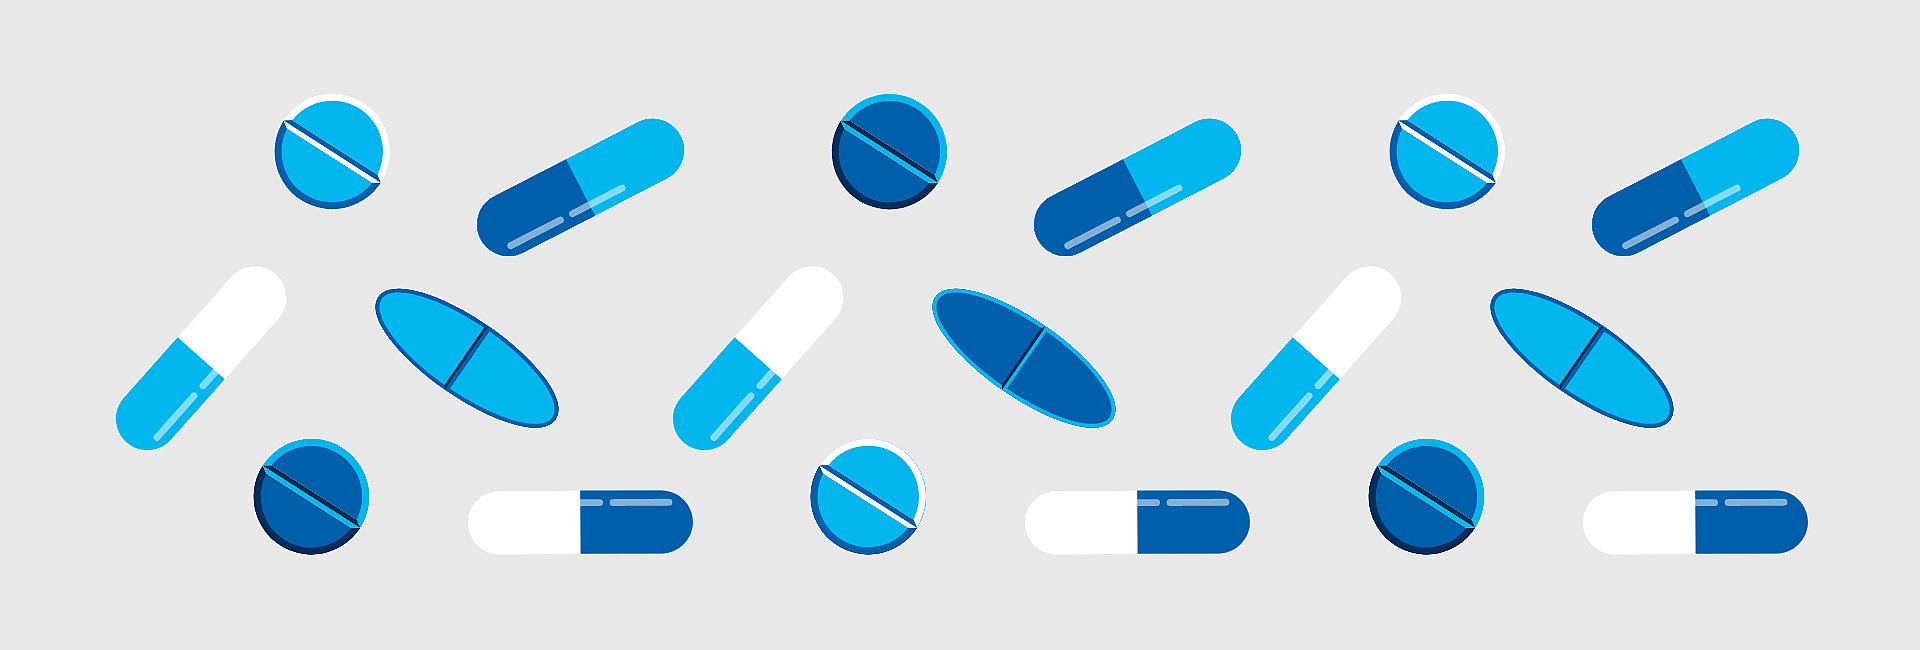 Zeichnung von verschiedenen Tabletten